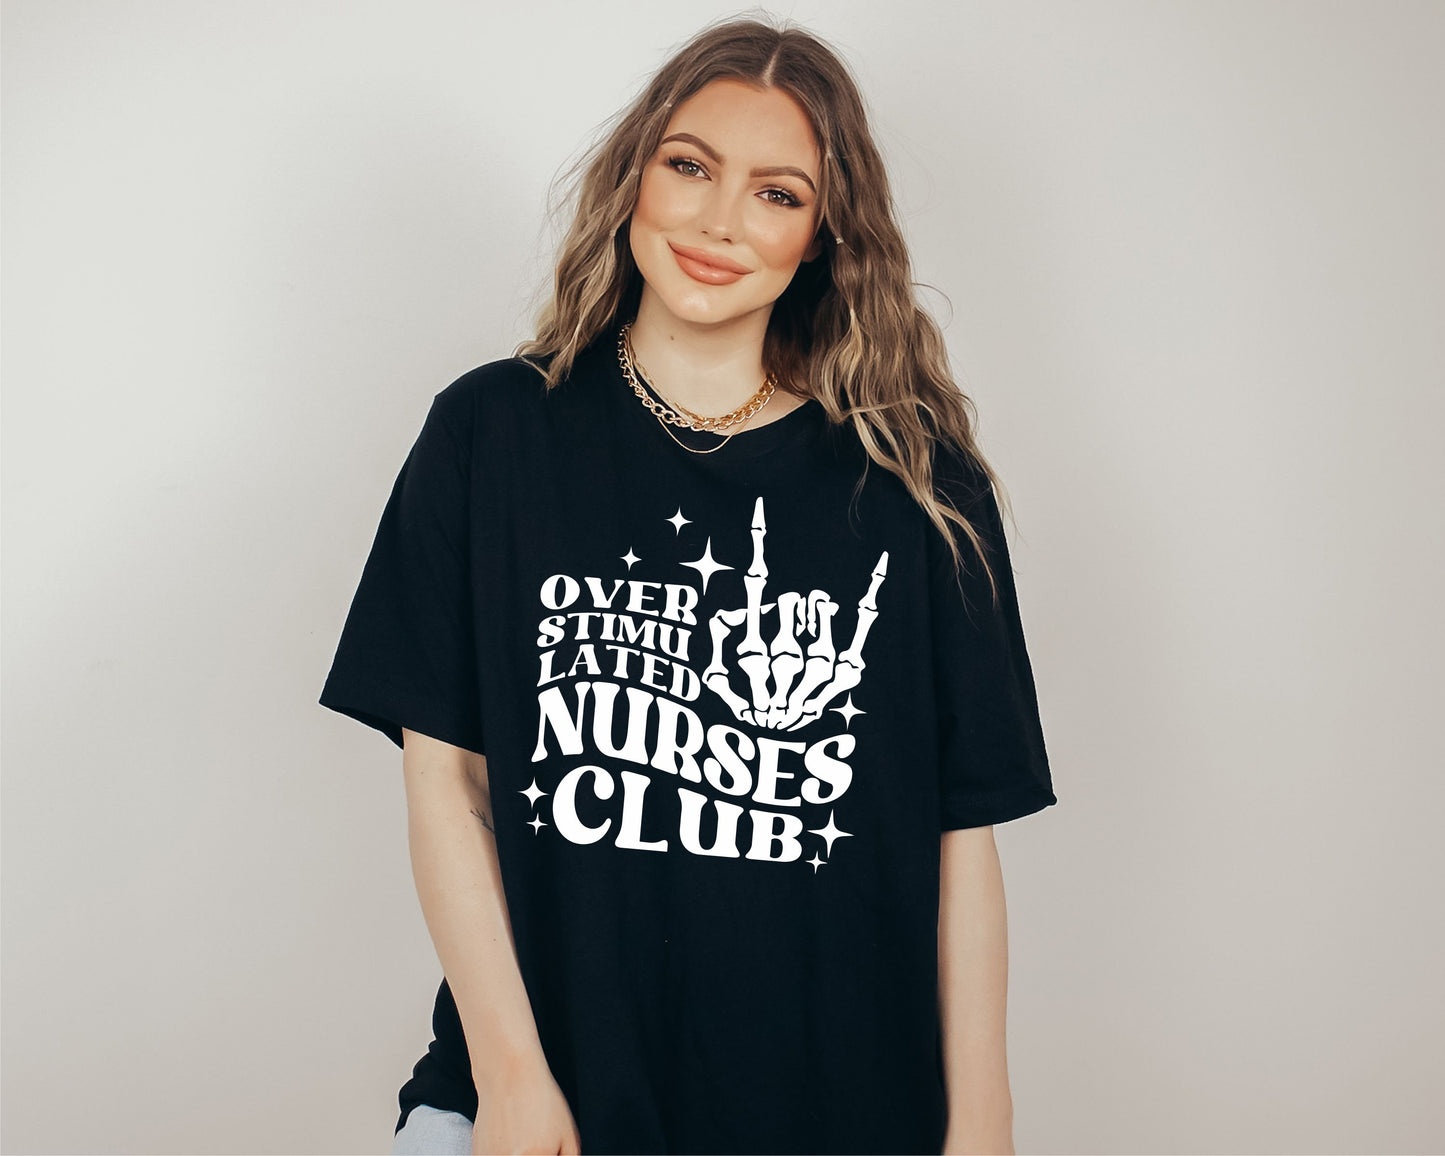 Overstimulated Nurses Club Tee